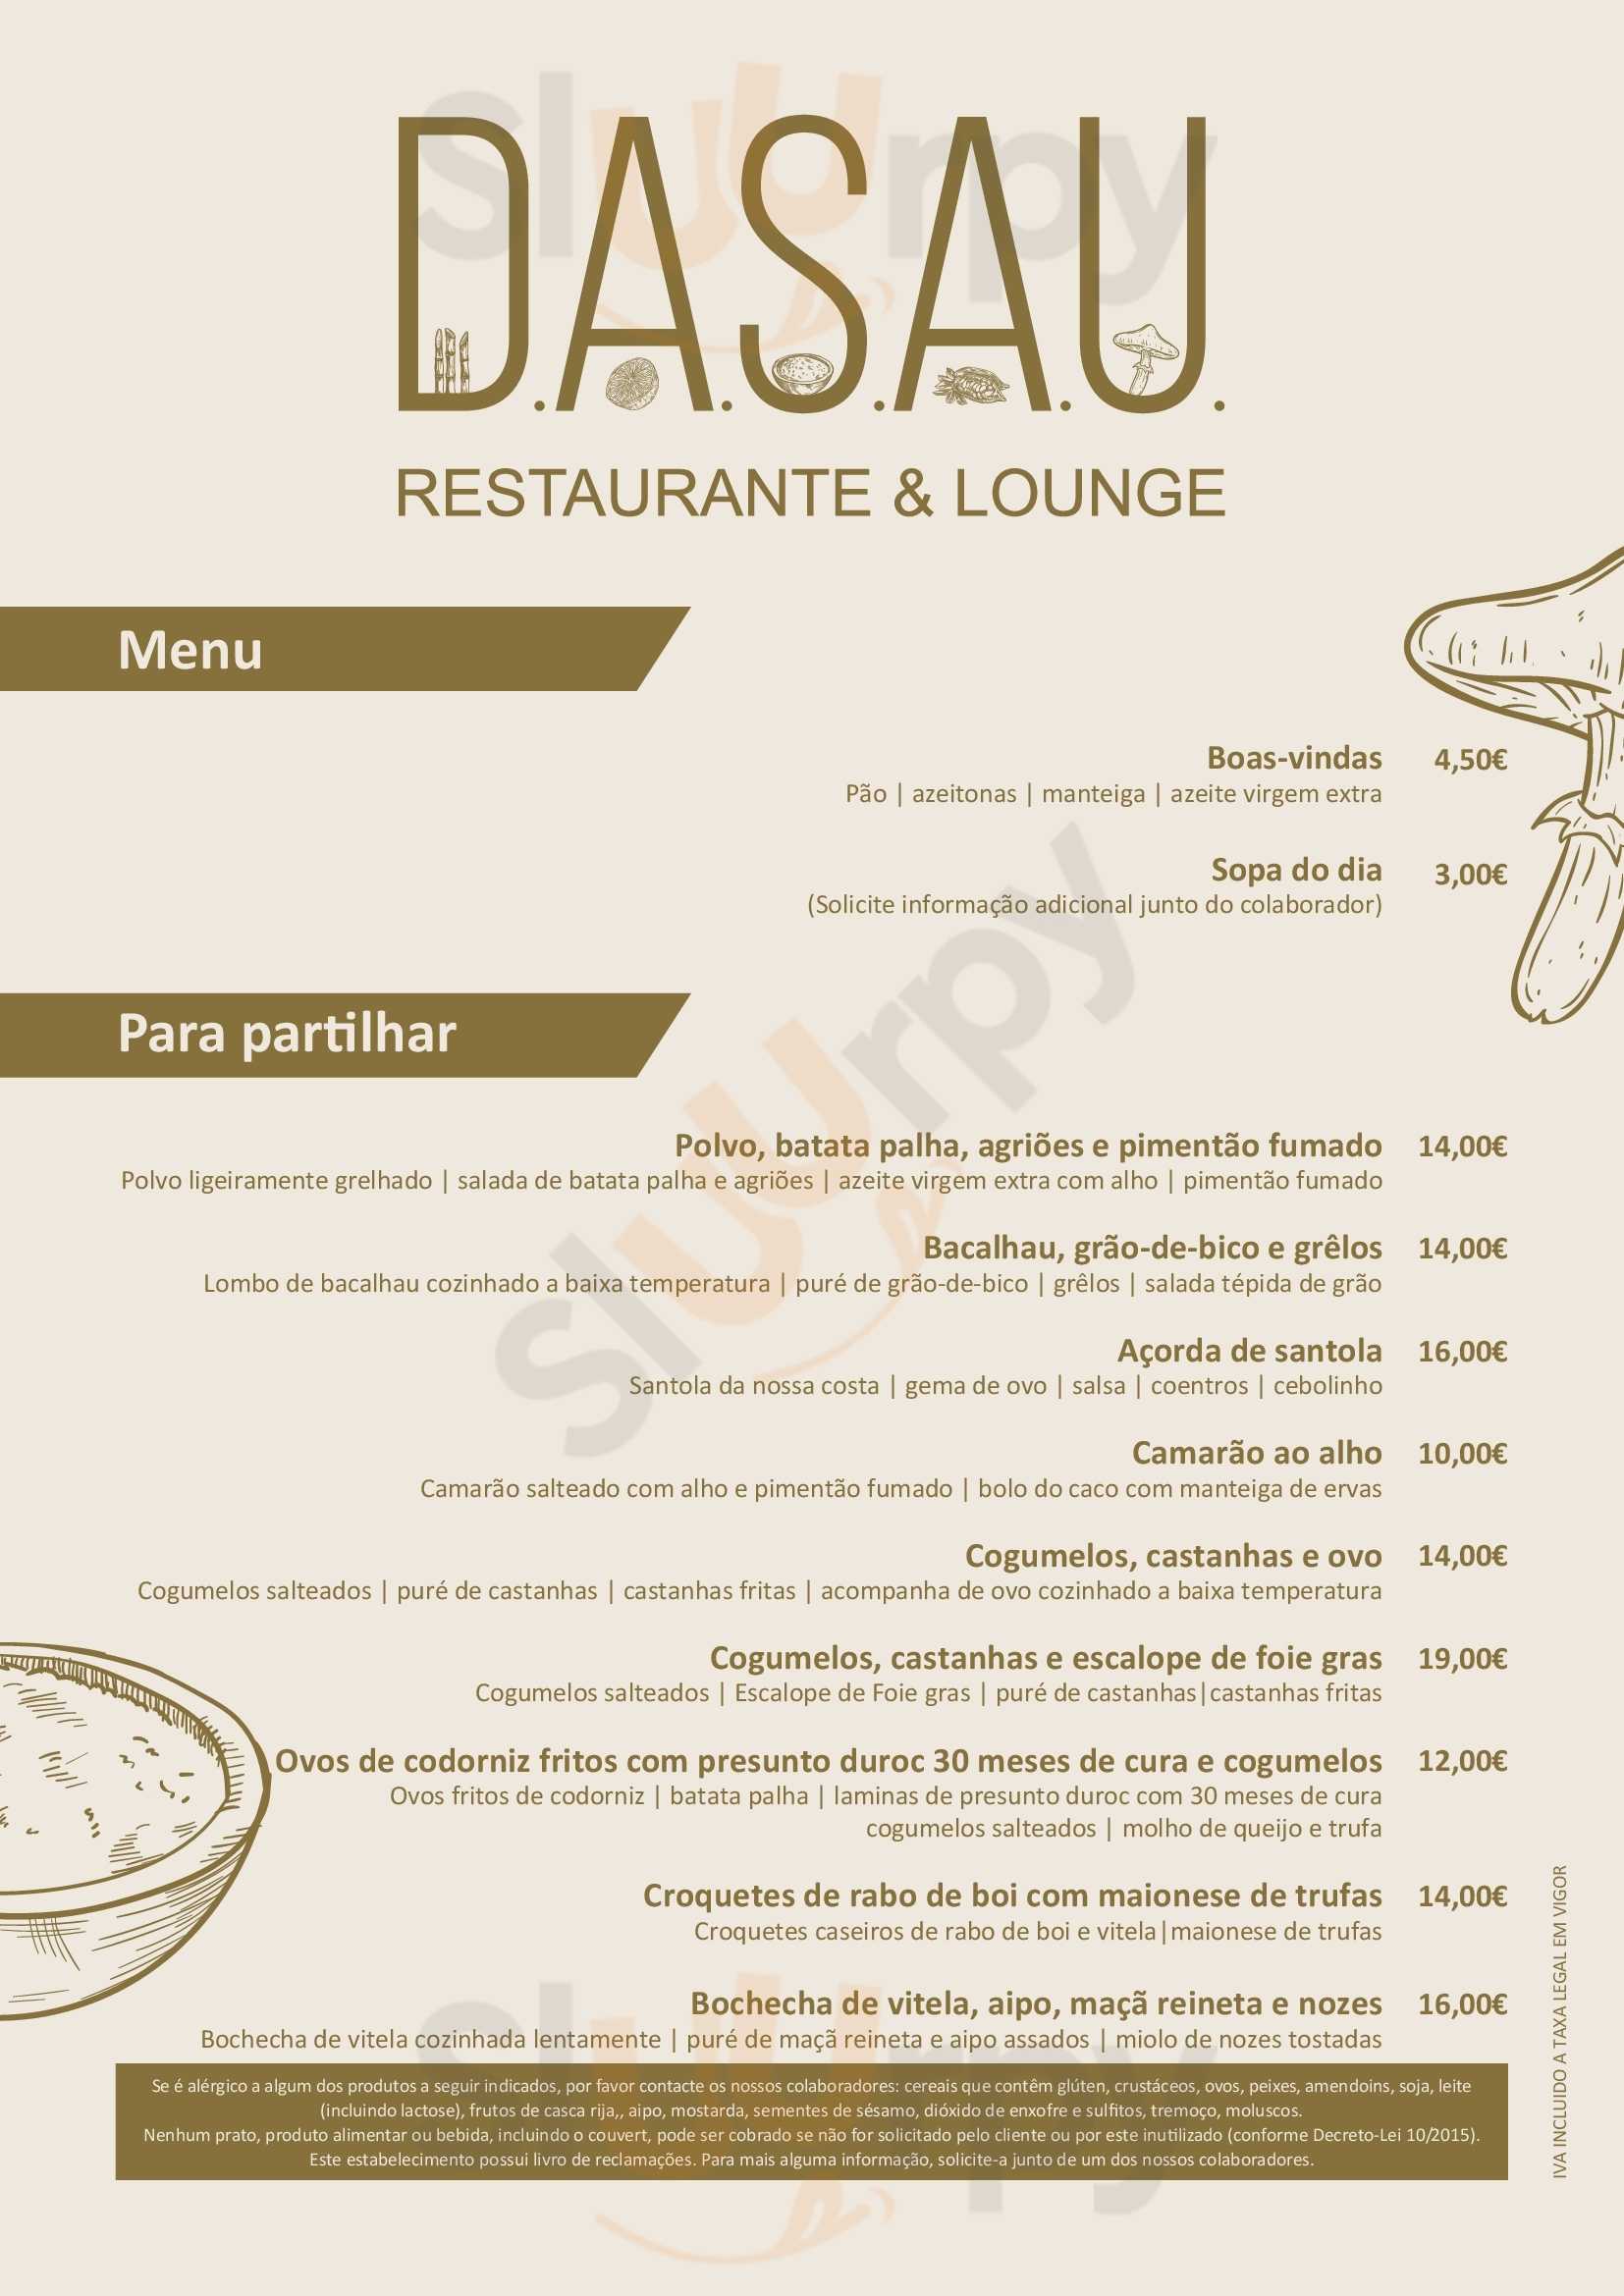 Dasau Restaurante & Lounge Viana do Castelo Menu - 1